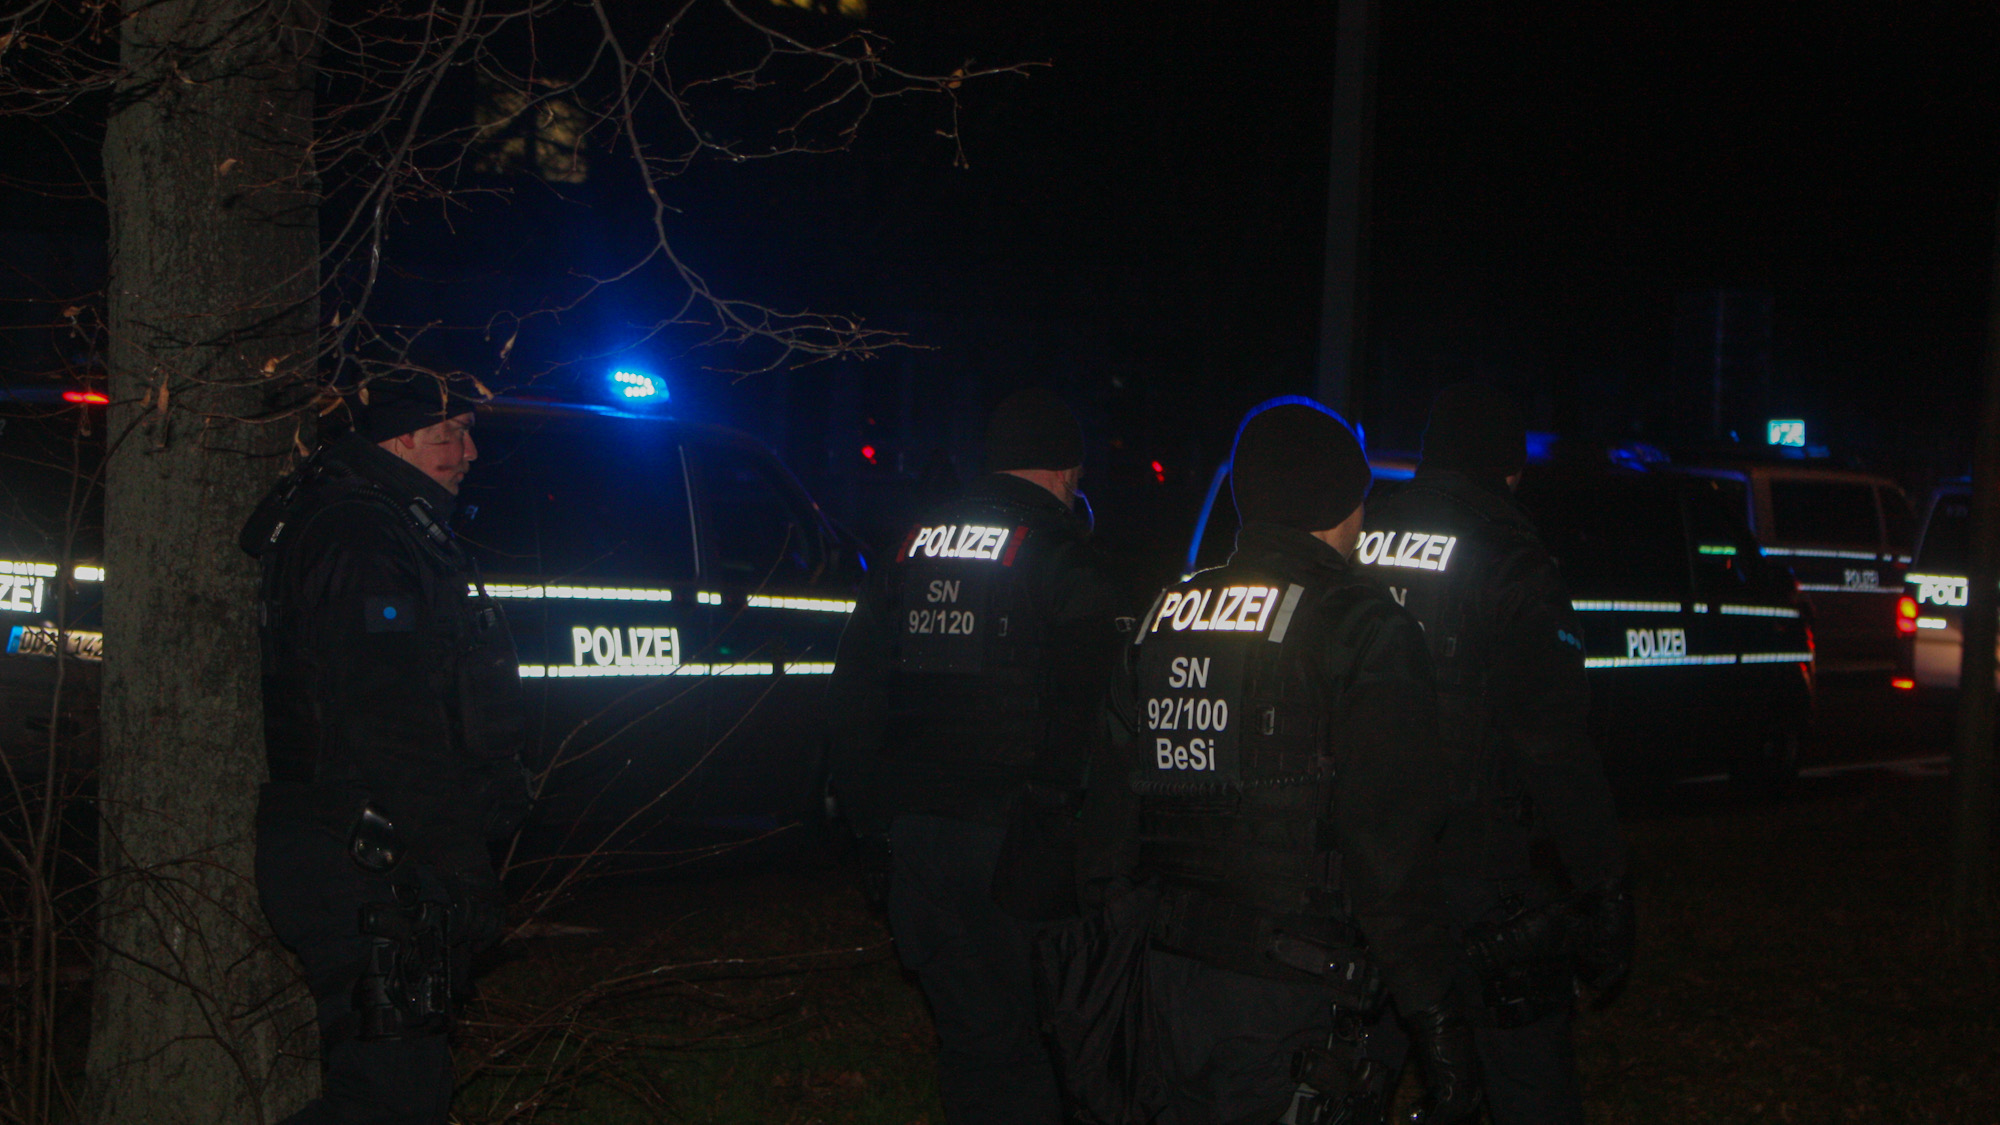 Etwa 35 Polizeibeamte suchen in den späten Abendstunden nach dem Sturmgewehrträger. - Foto: Florian Varga